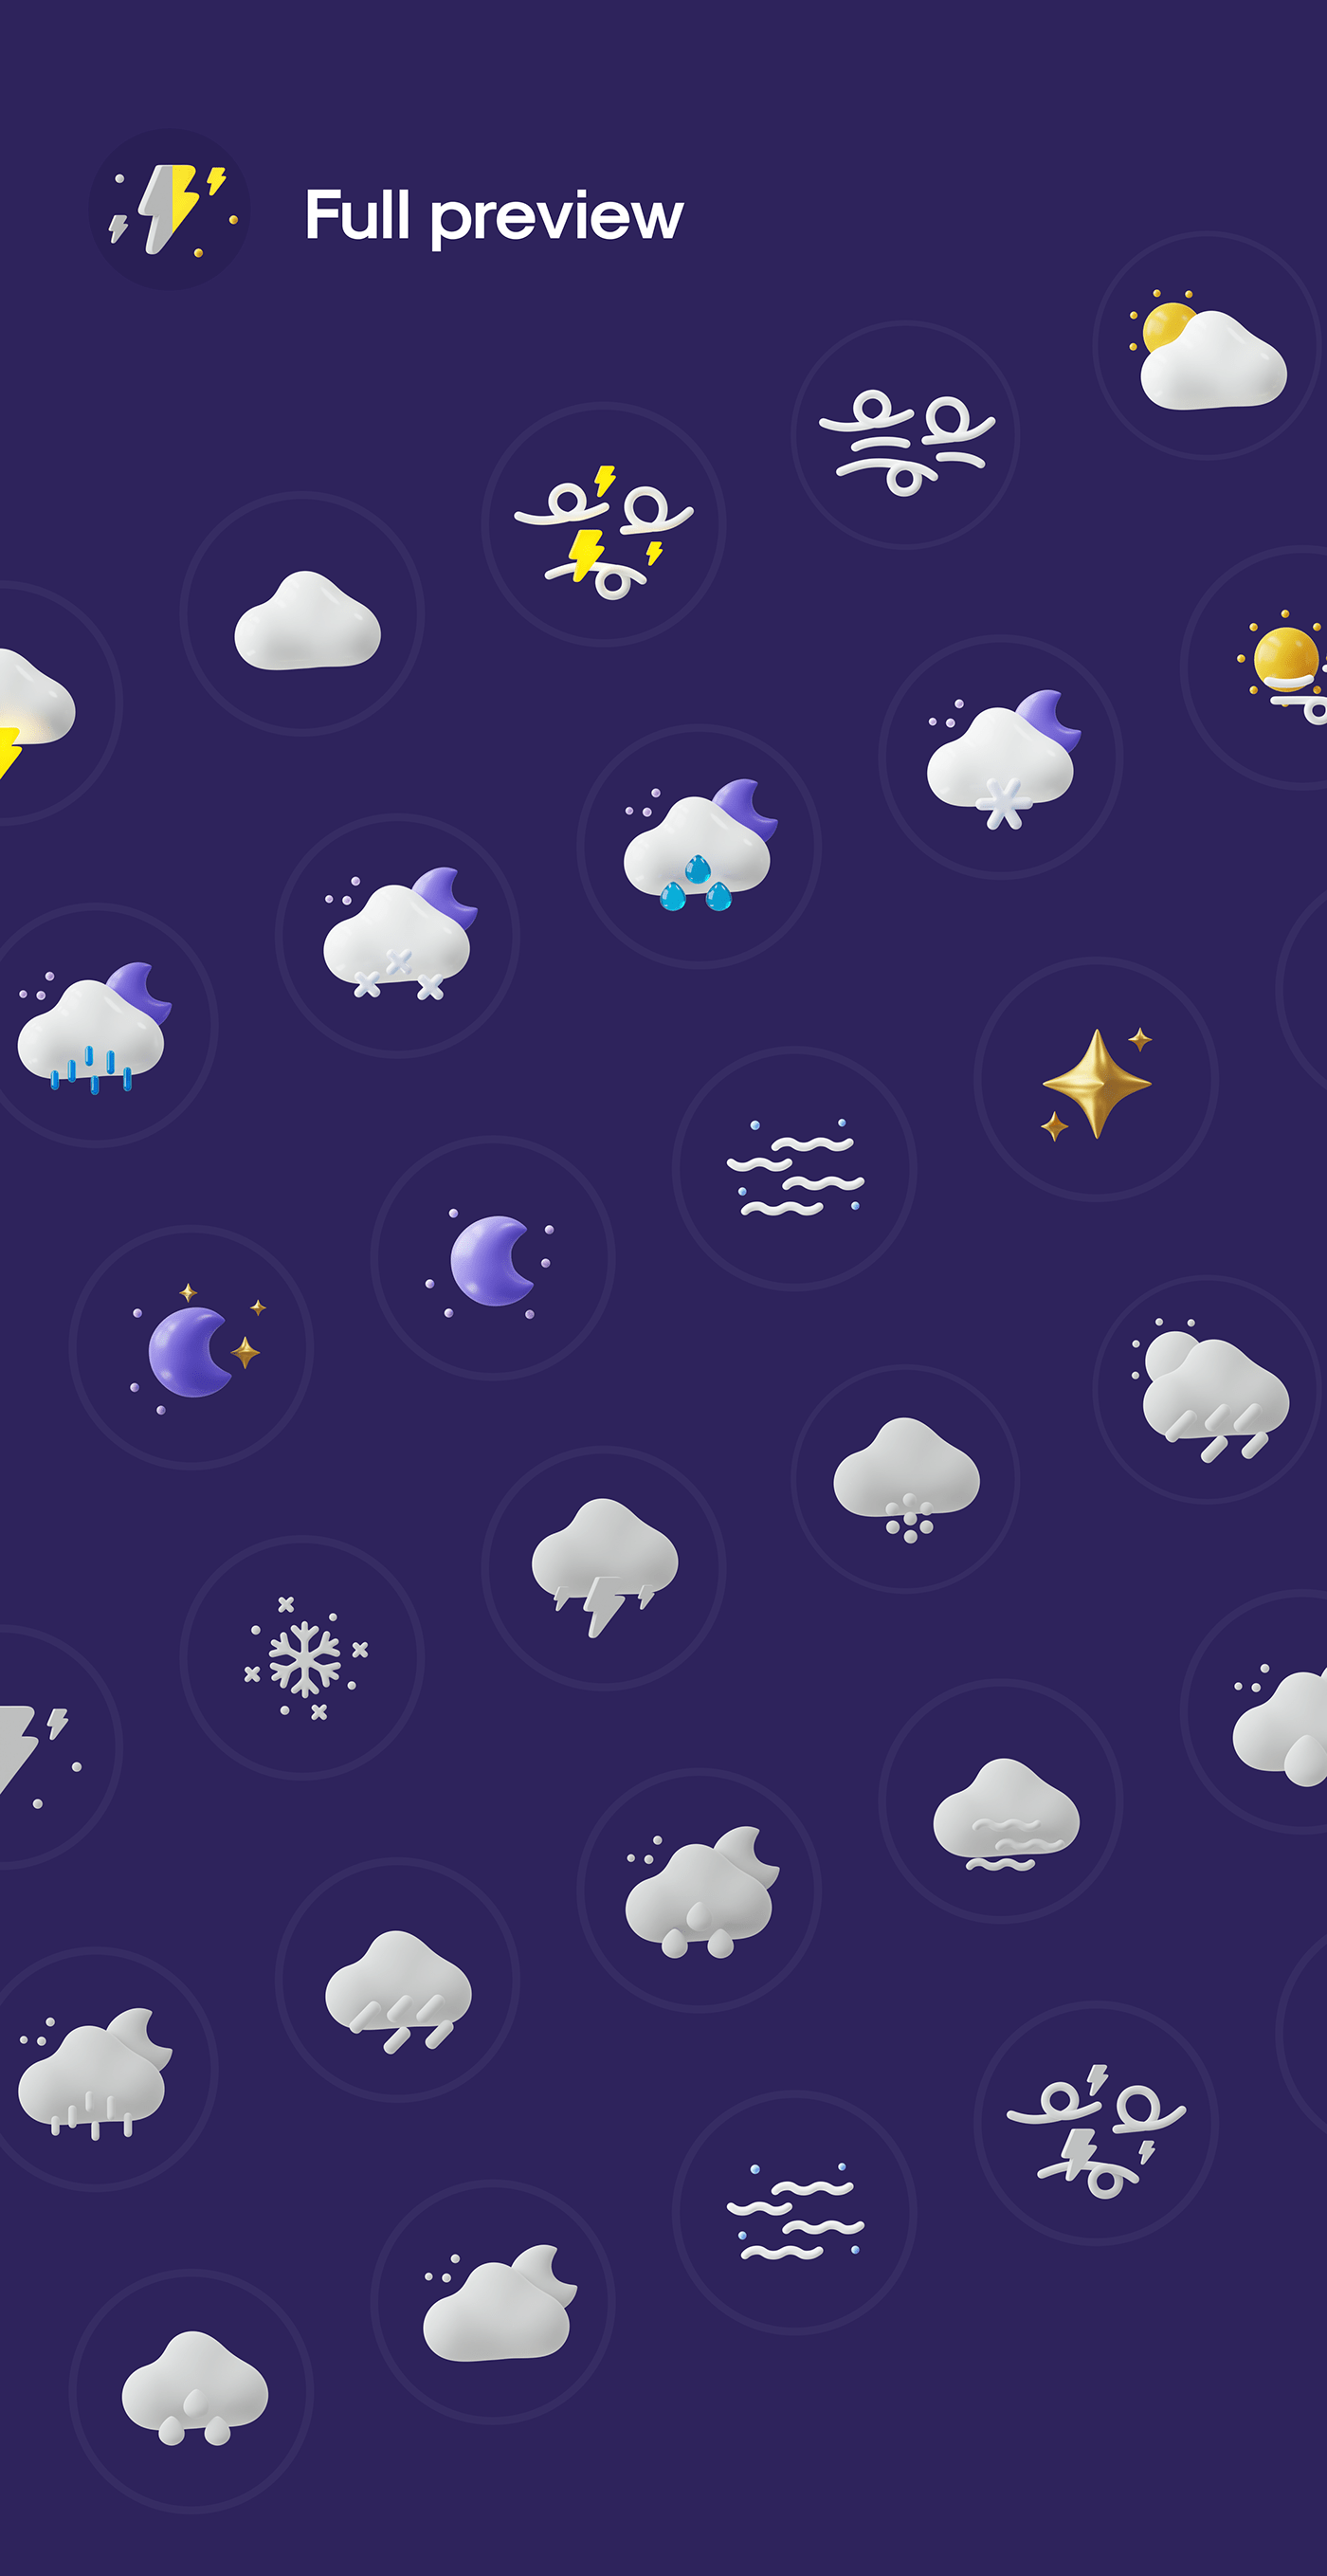 50多个3D高分辨率原始风格和粘土风格完美天气图标包 Weatherly 3D icons – 50+ Weather icons 图标素材 第8张